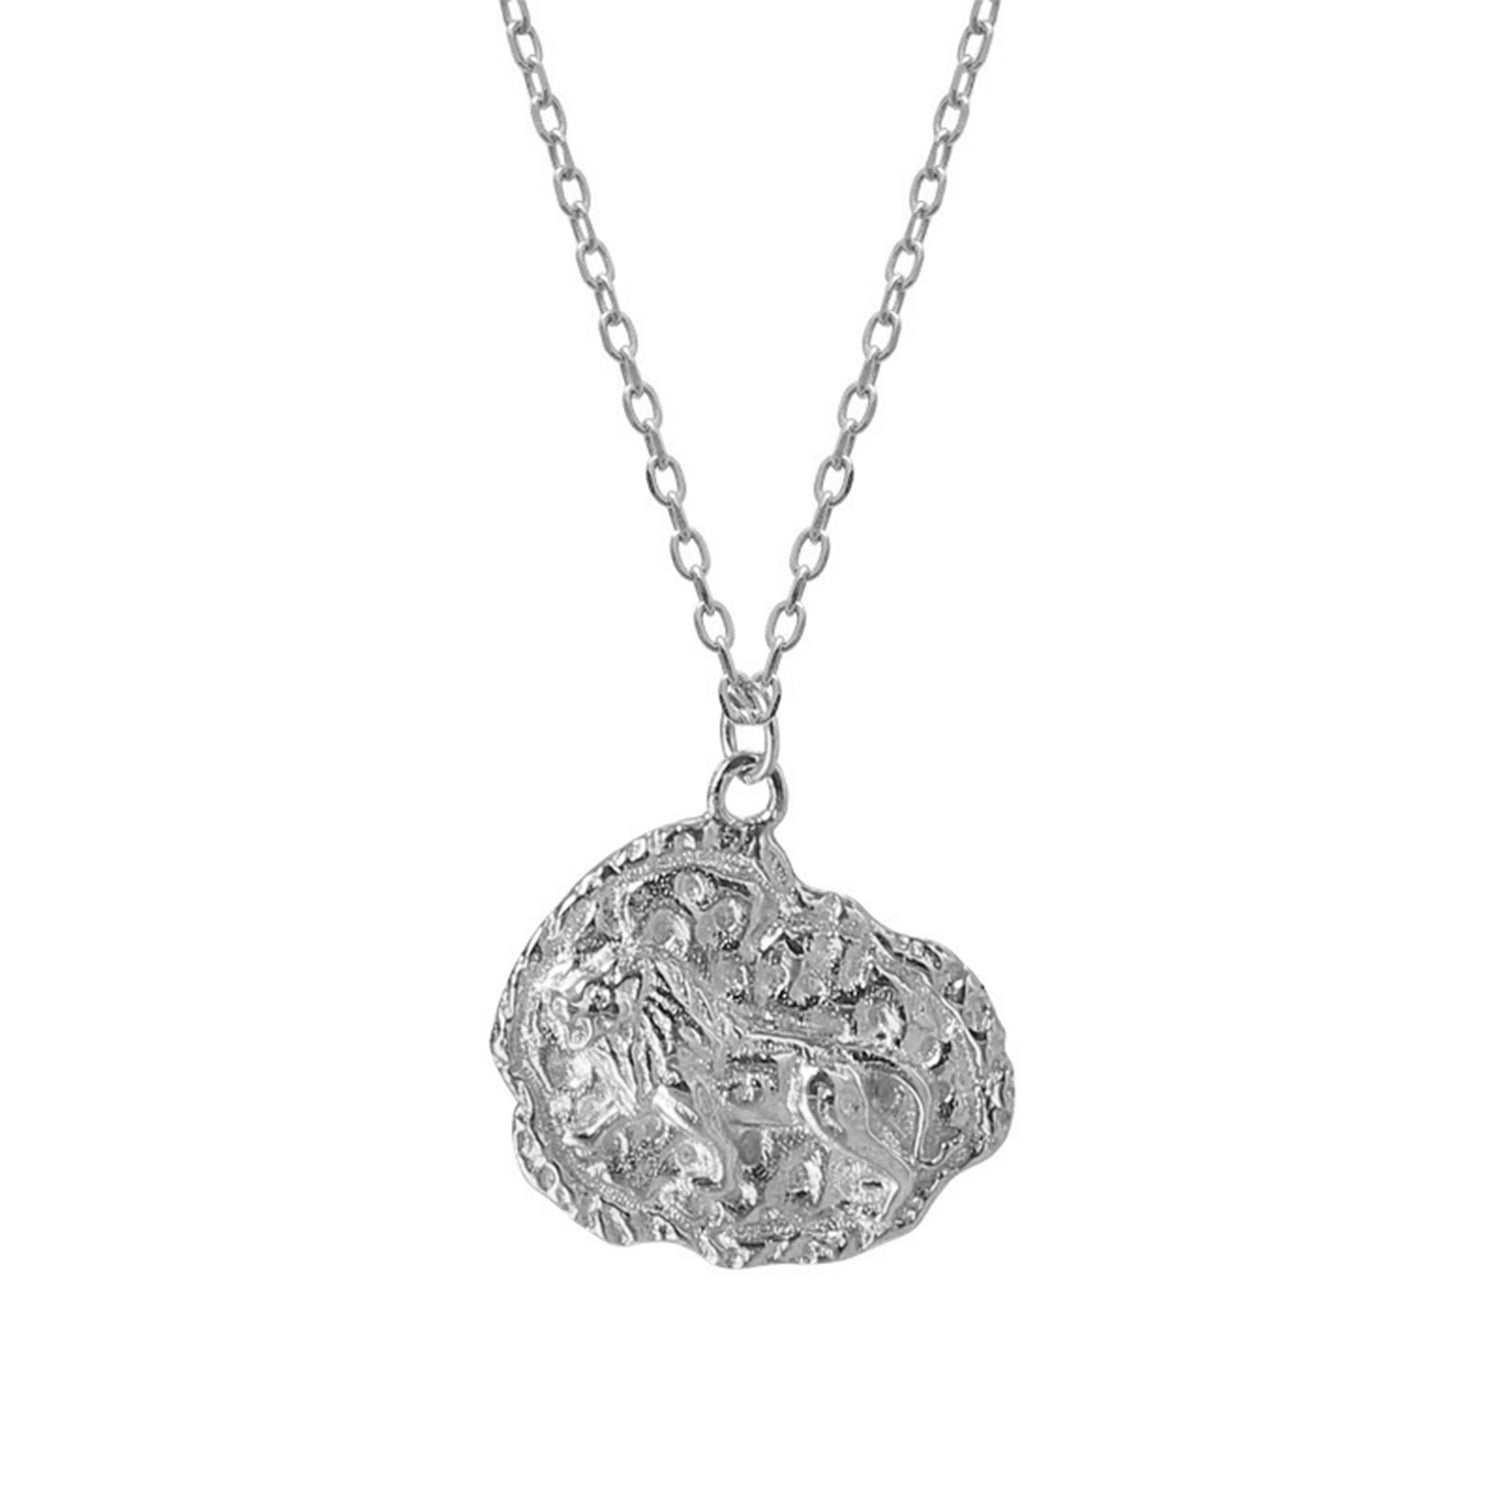 Mini Lioness necklace- Silver